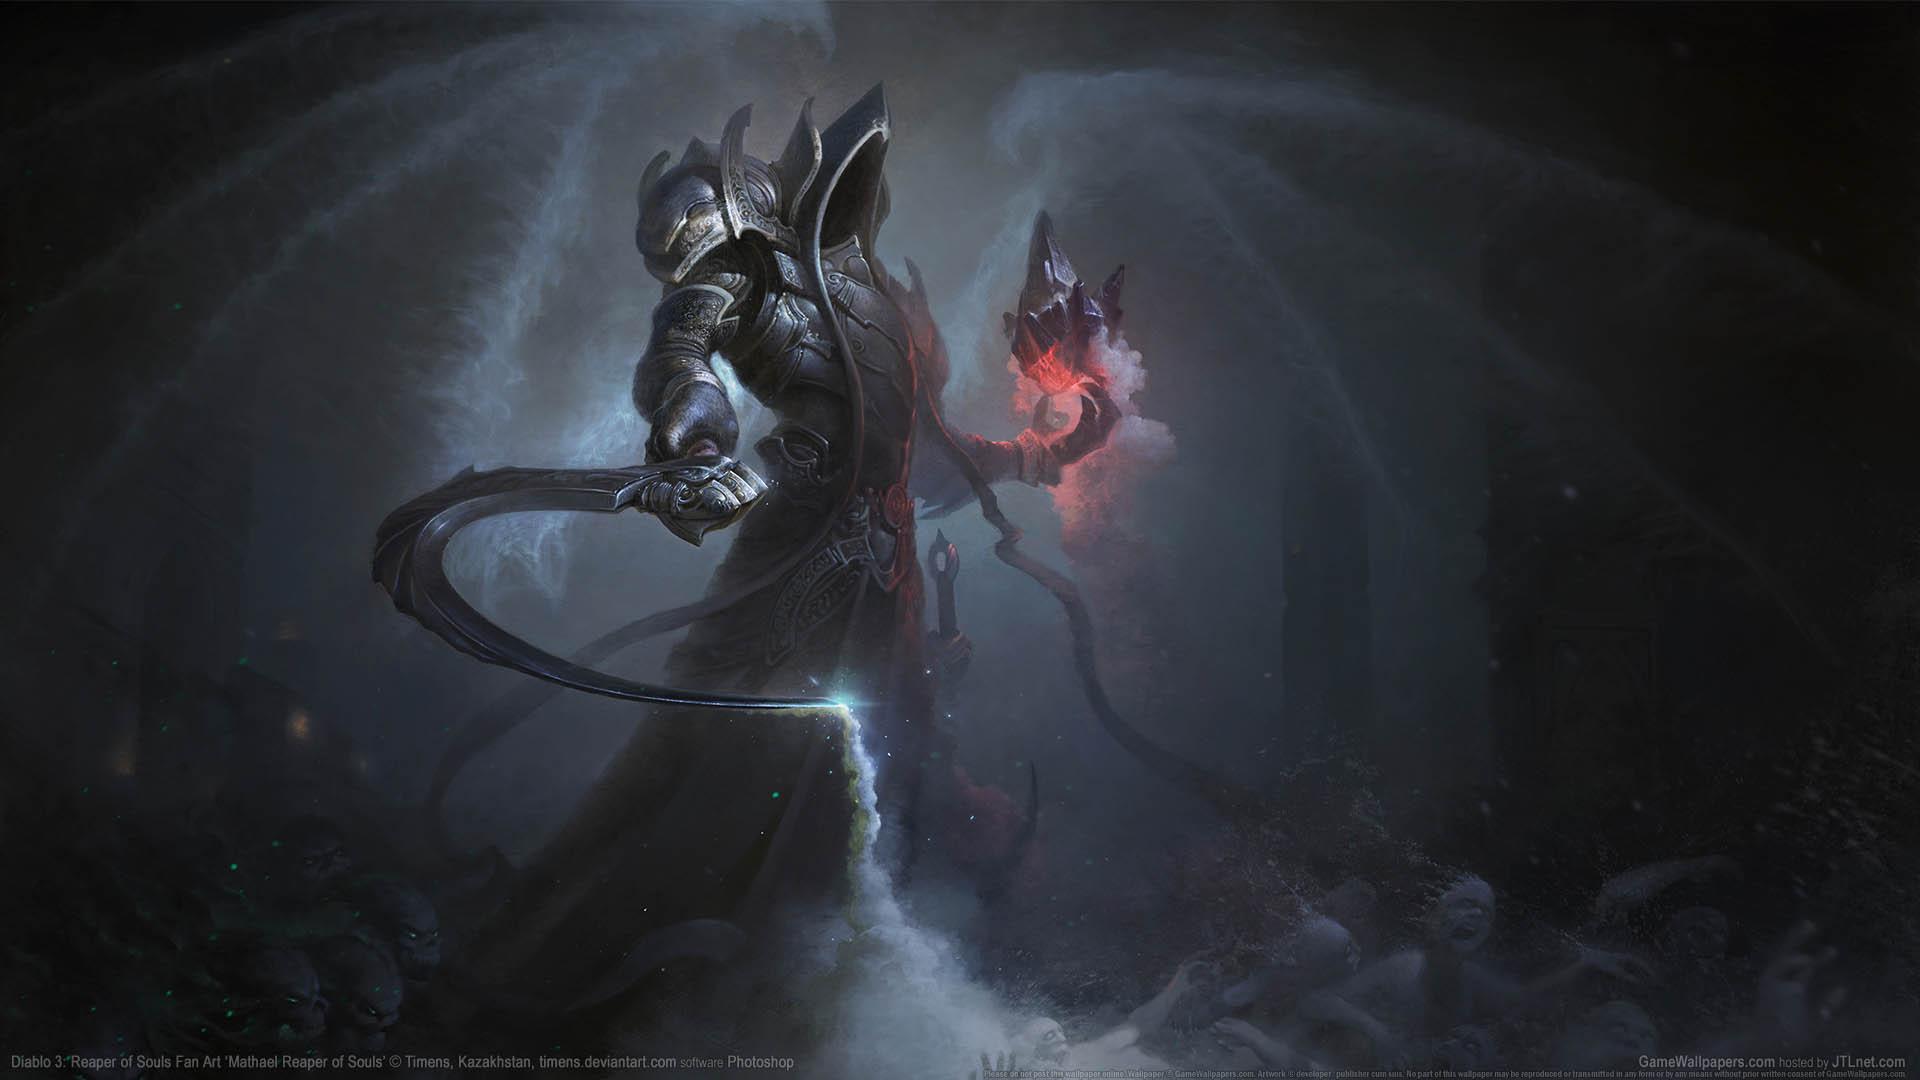 Diablo 3: Reaper of Souls Fan Art wallpaper or desktop background